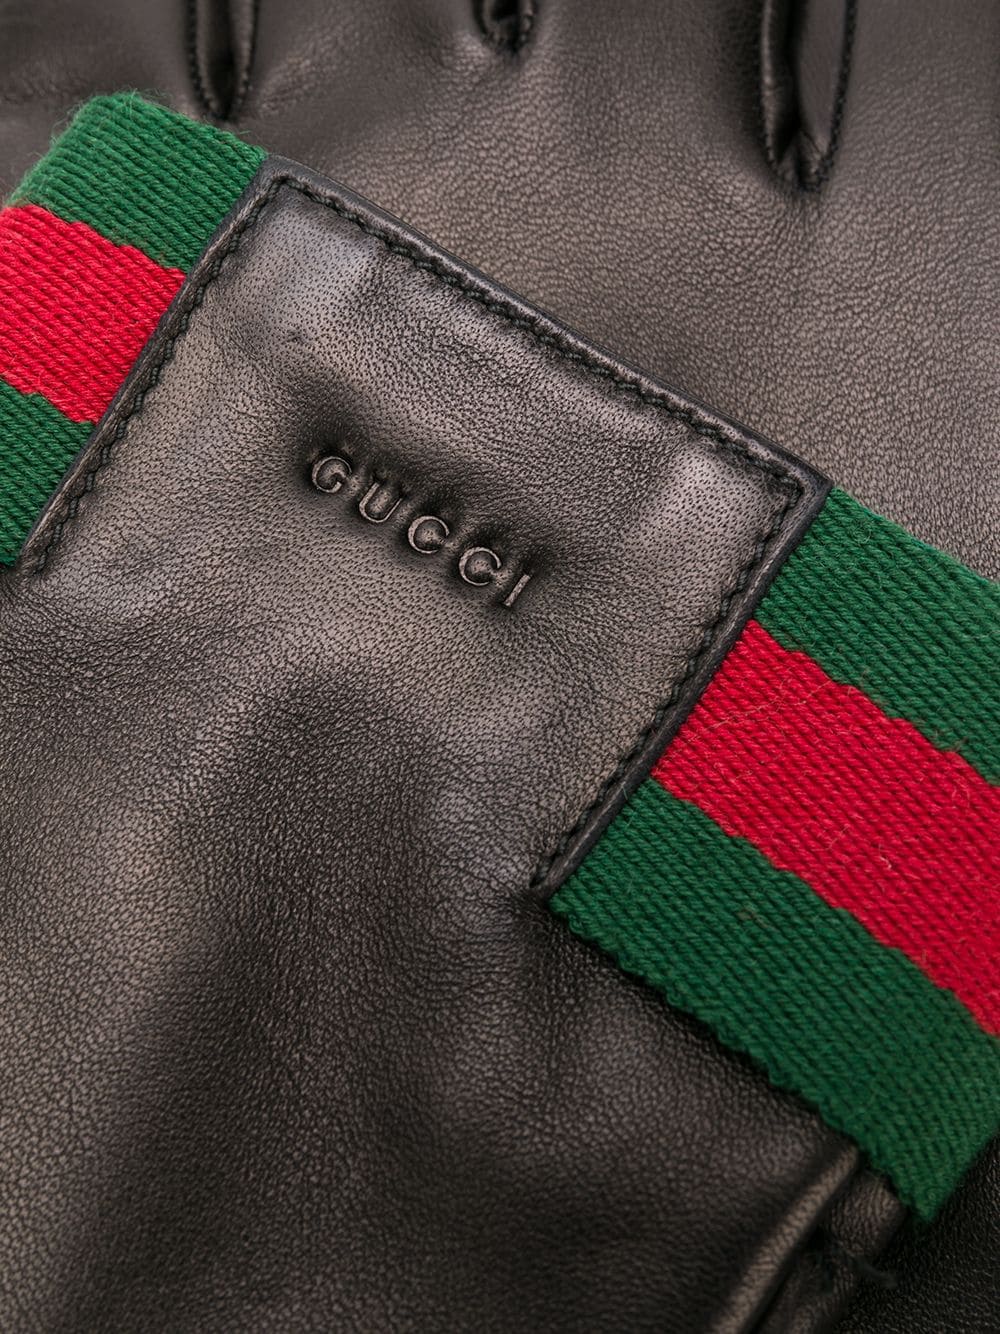 фото Gucci перчатки с полосками